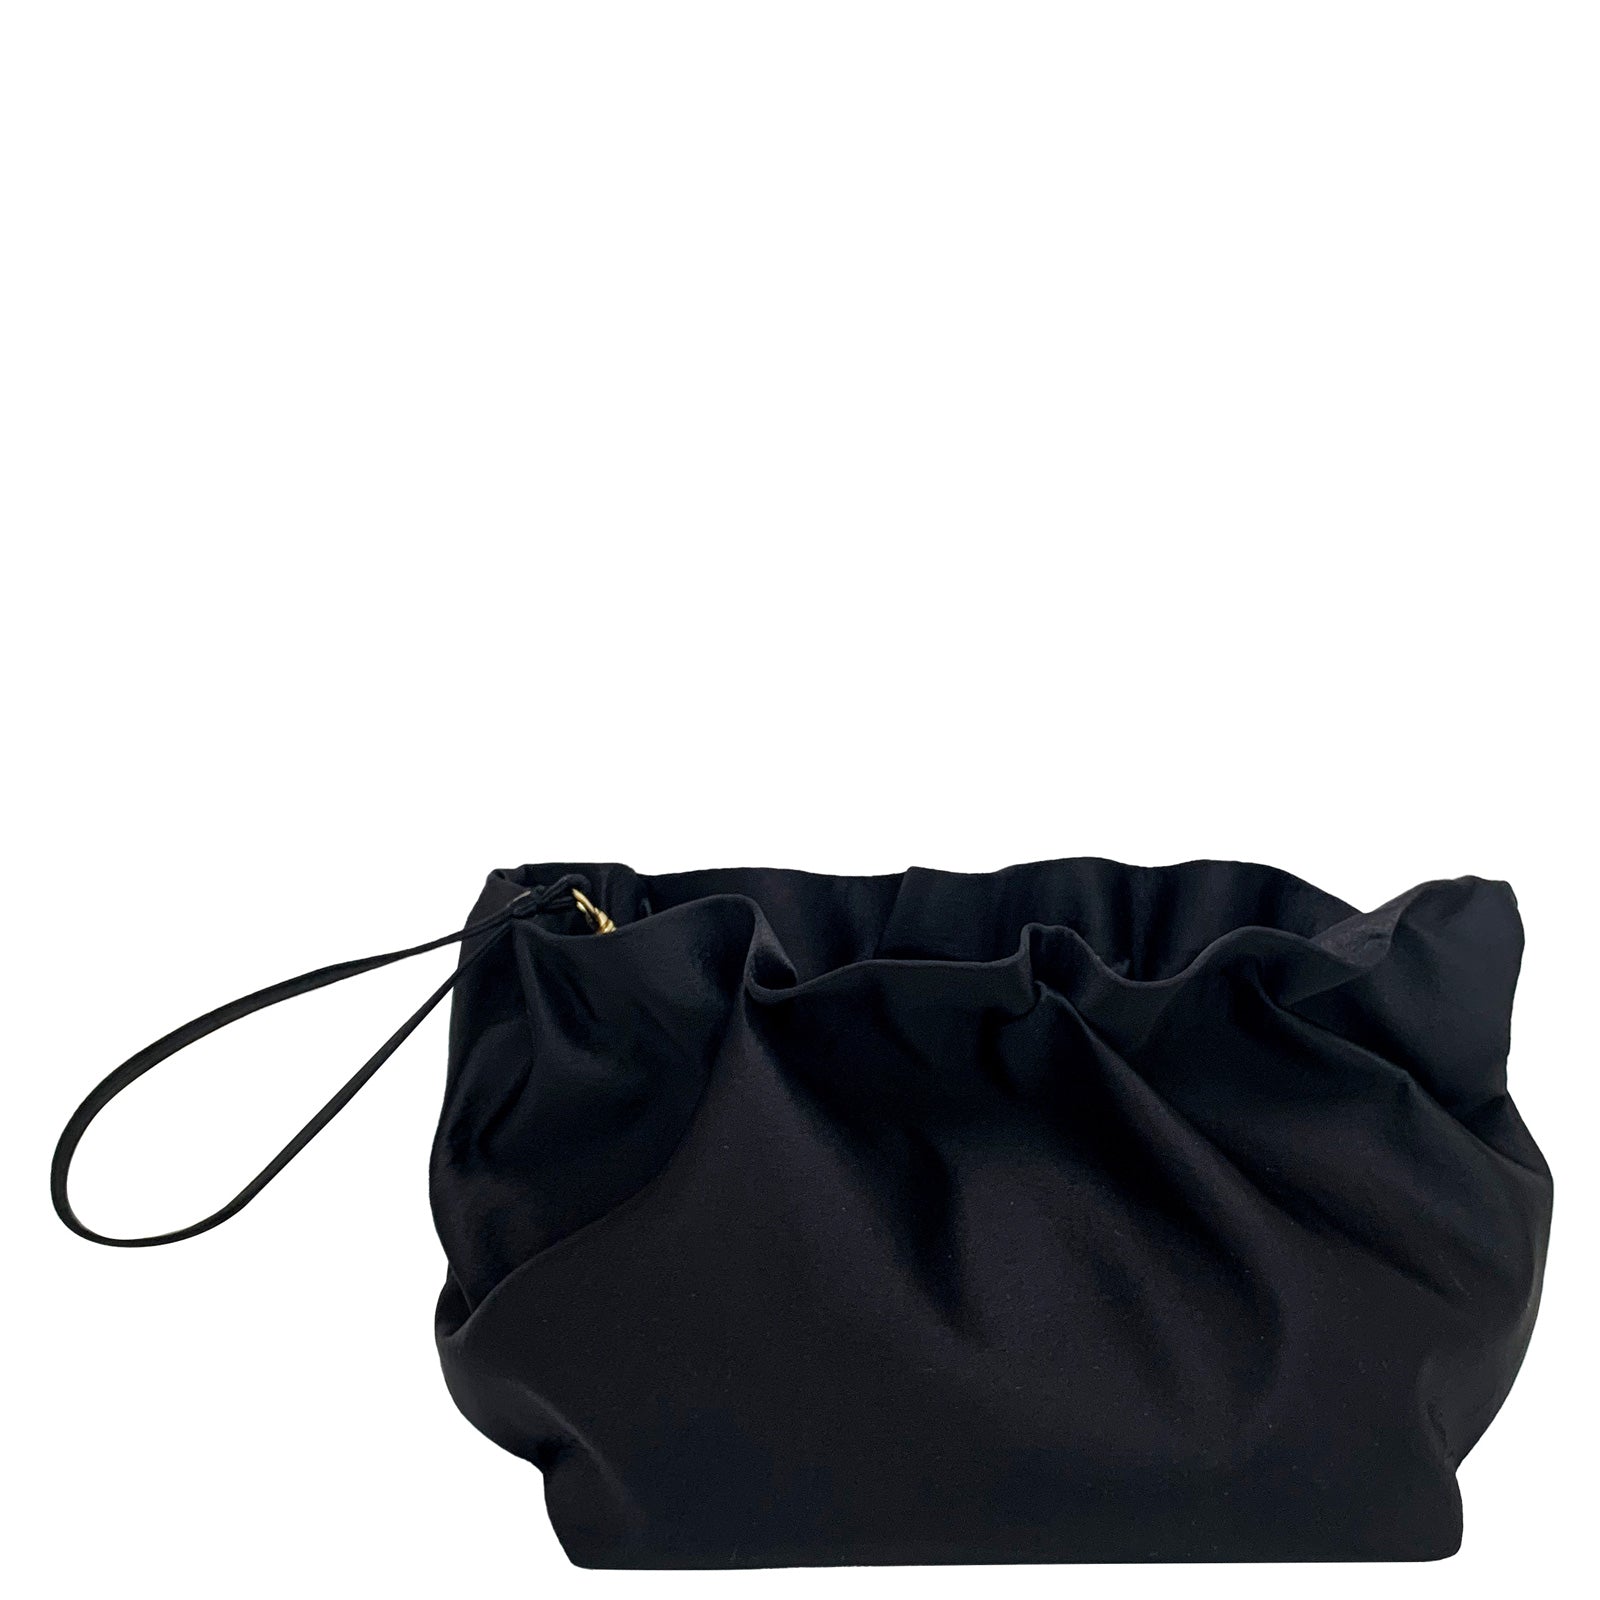 La Regale Women's Clutch Bag